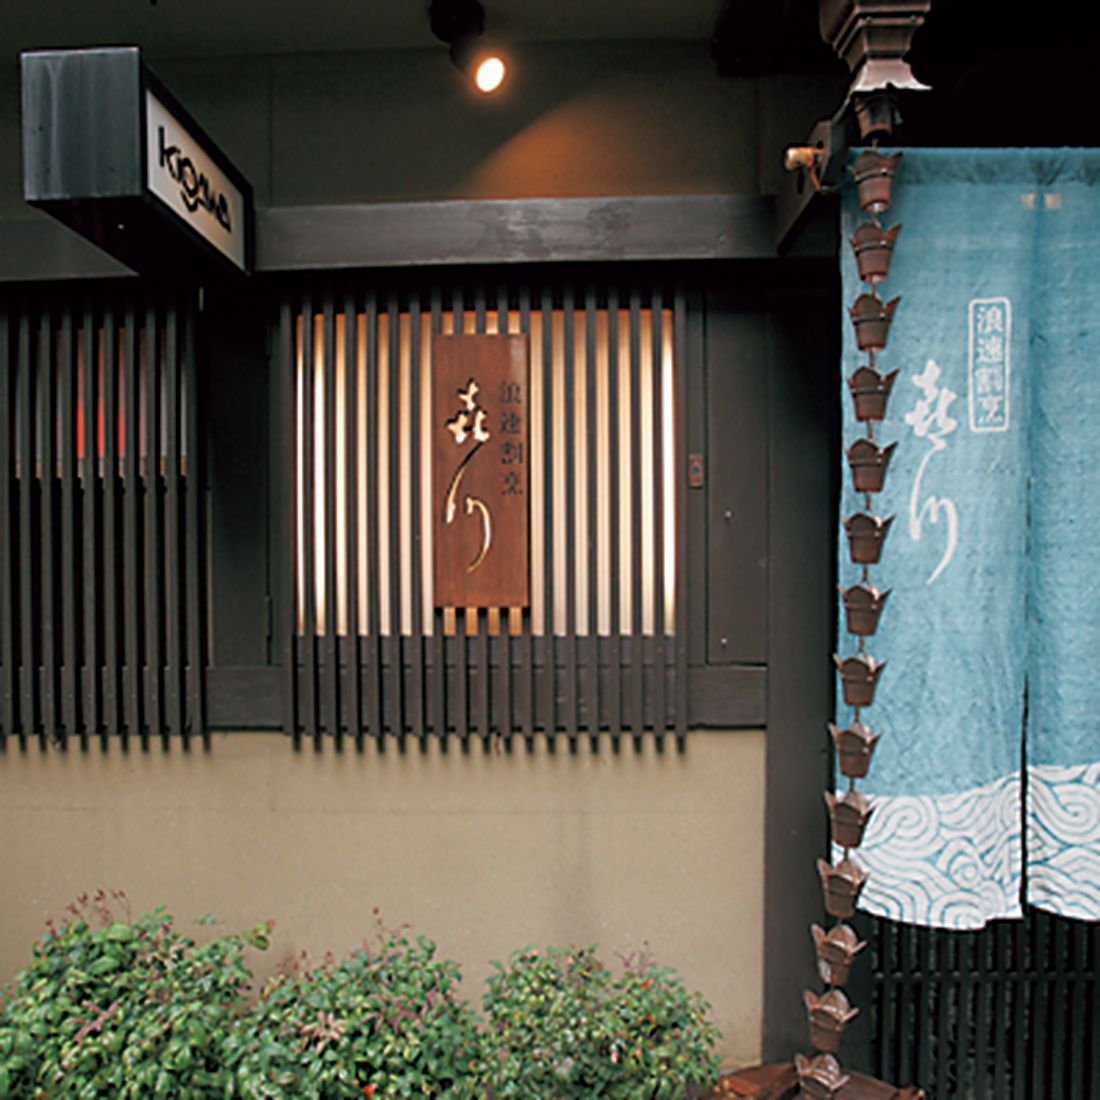 「大阪の名店が立ち並ぶ法善寺横丁のなかでもひと際“美味しい店オーラ”を放っている」（見城）。